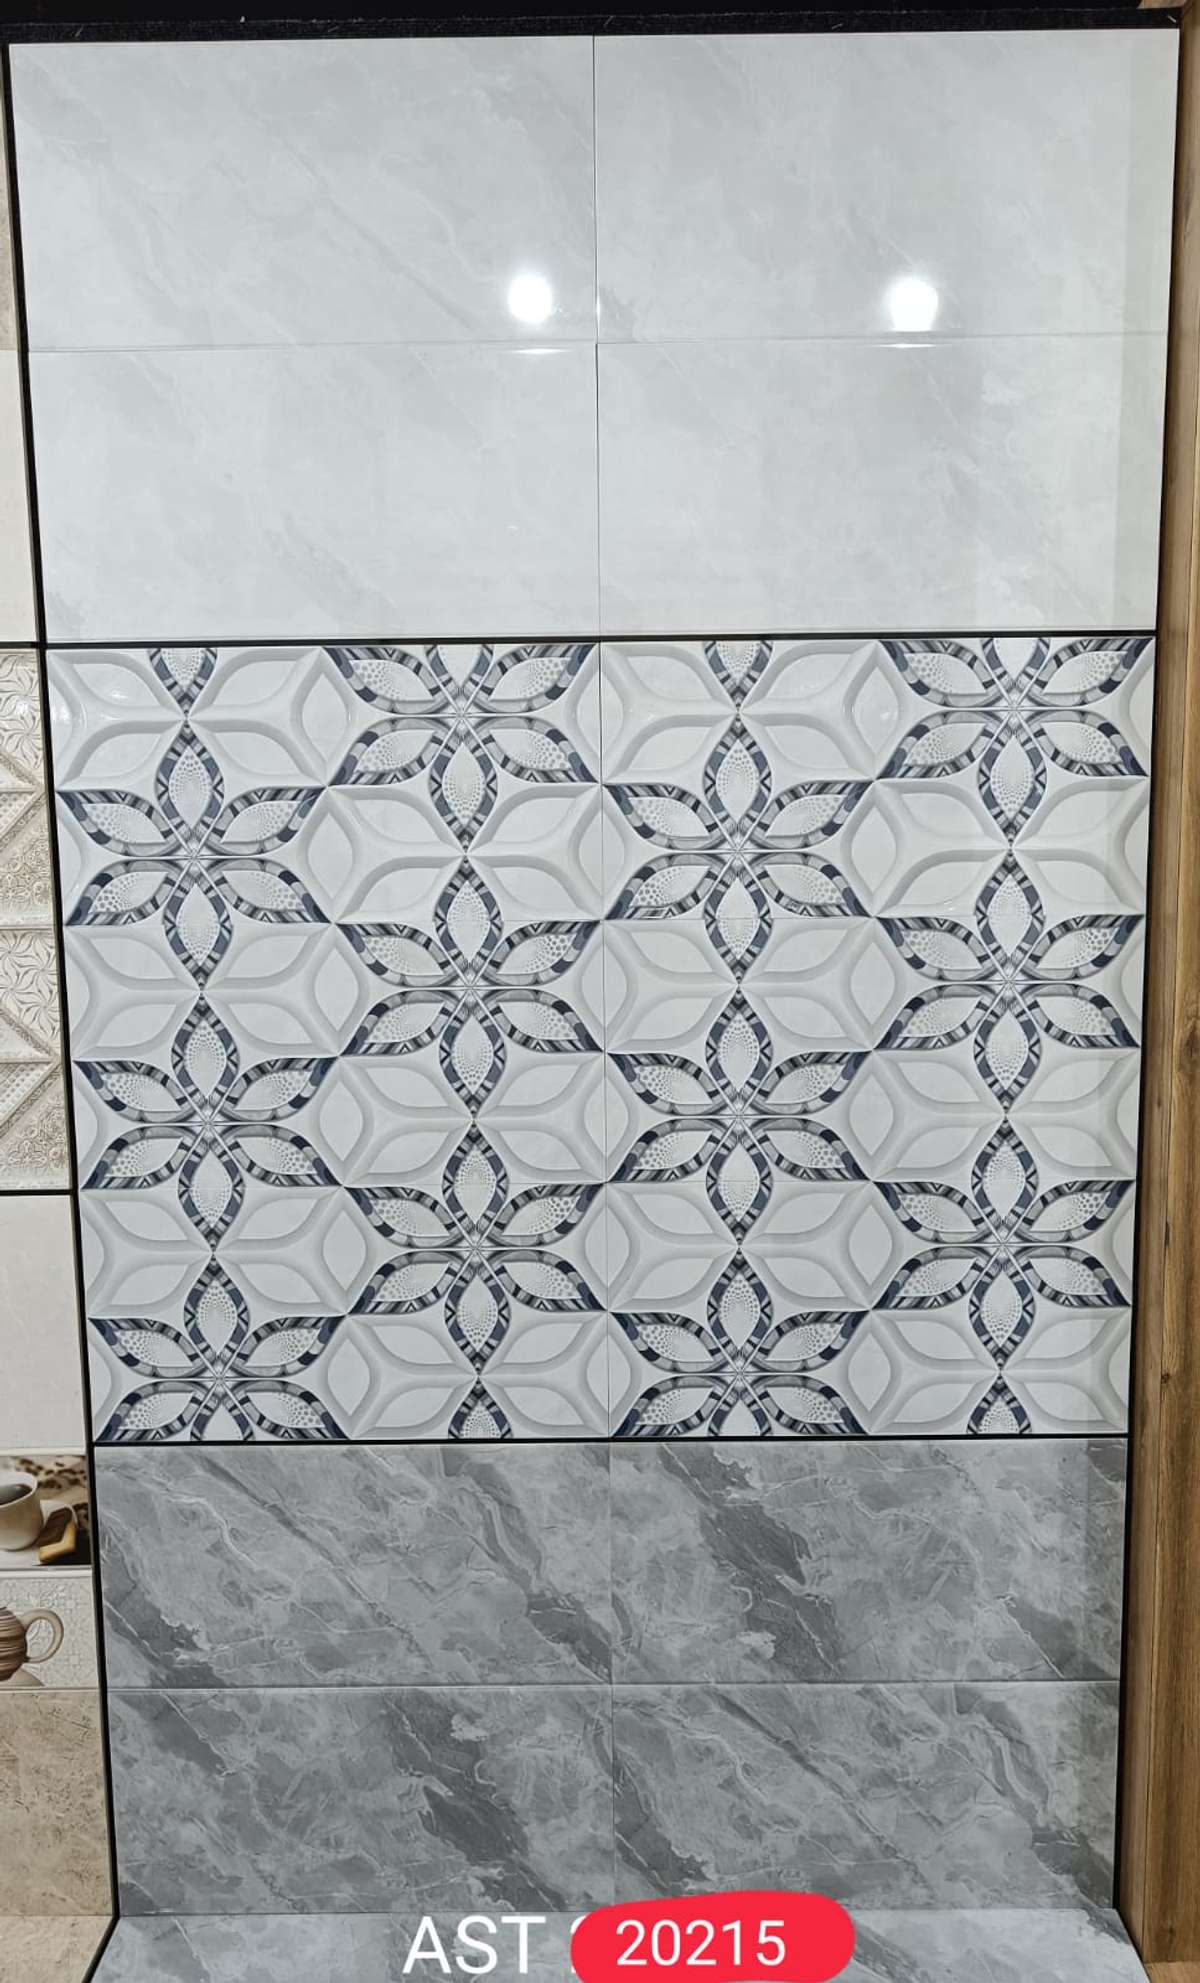 Designs by Building Supplies Hindustan marble, Delhi | Kolo